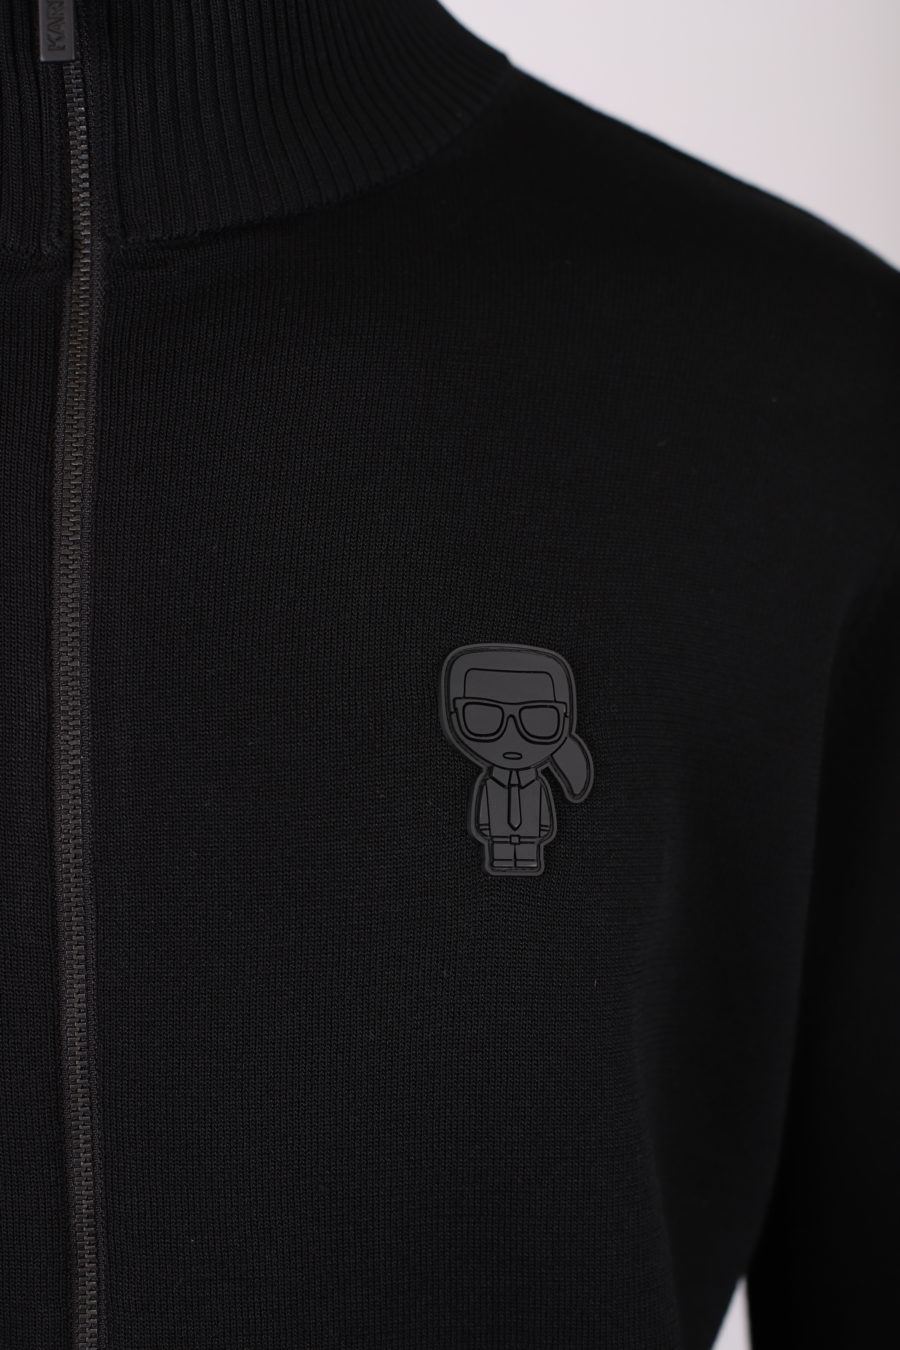 Camisola preta com fecho de correr e logótipo "Karl" em borracha - IMG 9165